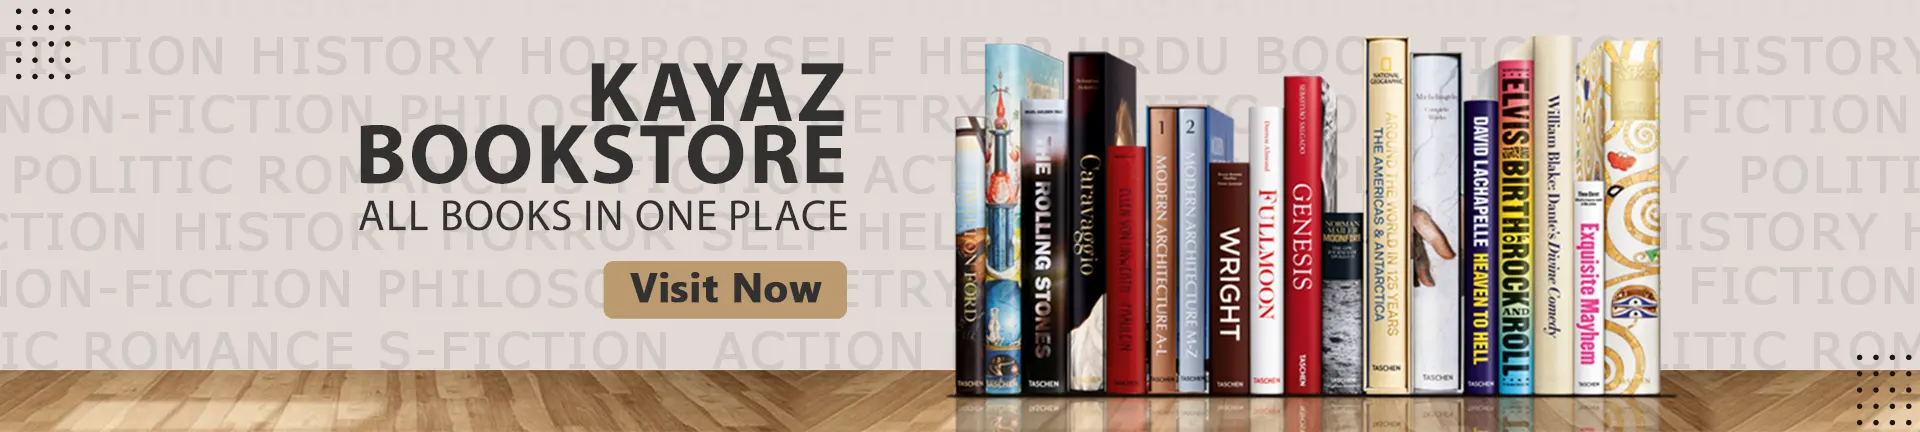 Online Bookstore in Pakistan - Buy Books Online - Kayazar